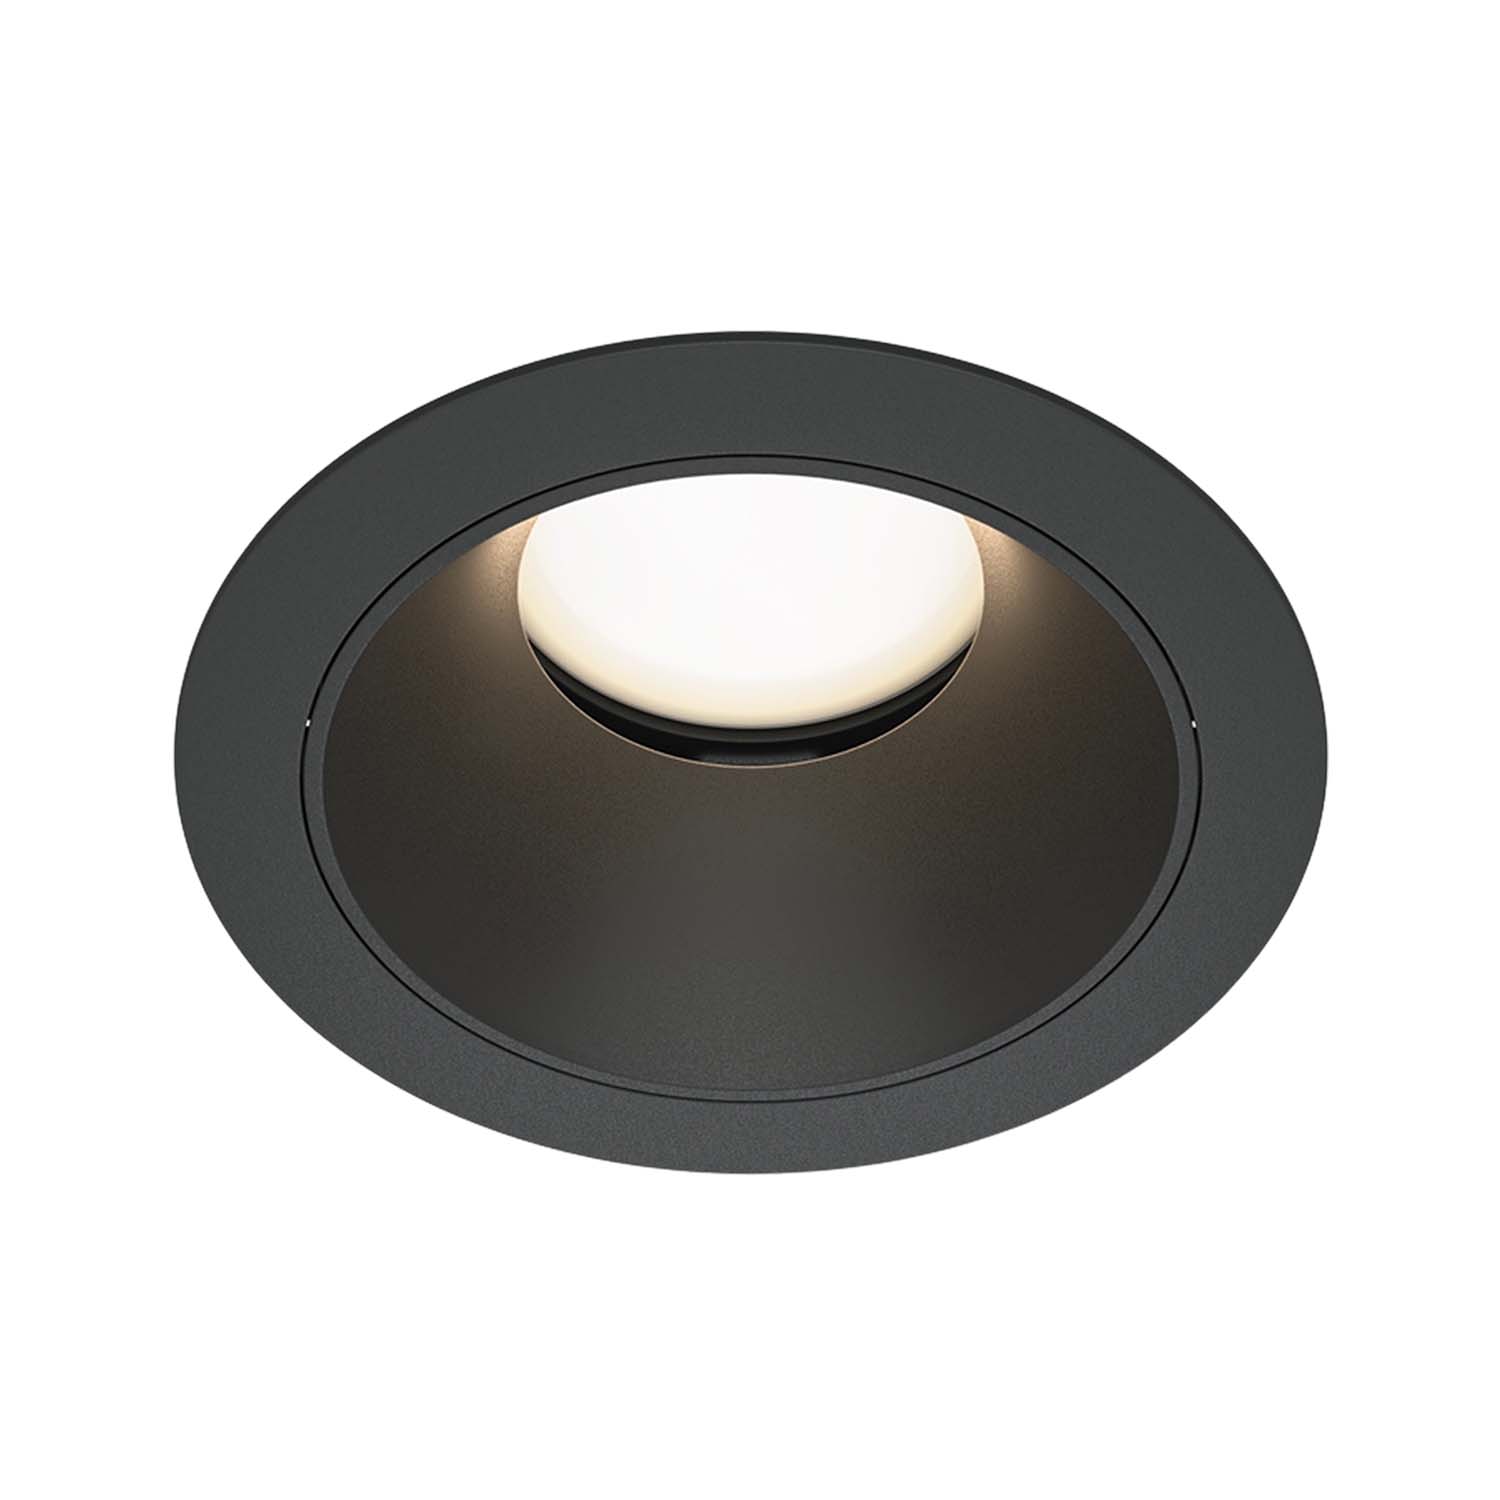 SHARE - Designer round recessed spotlight diameter 85mm